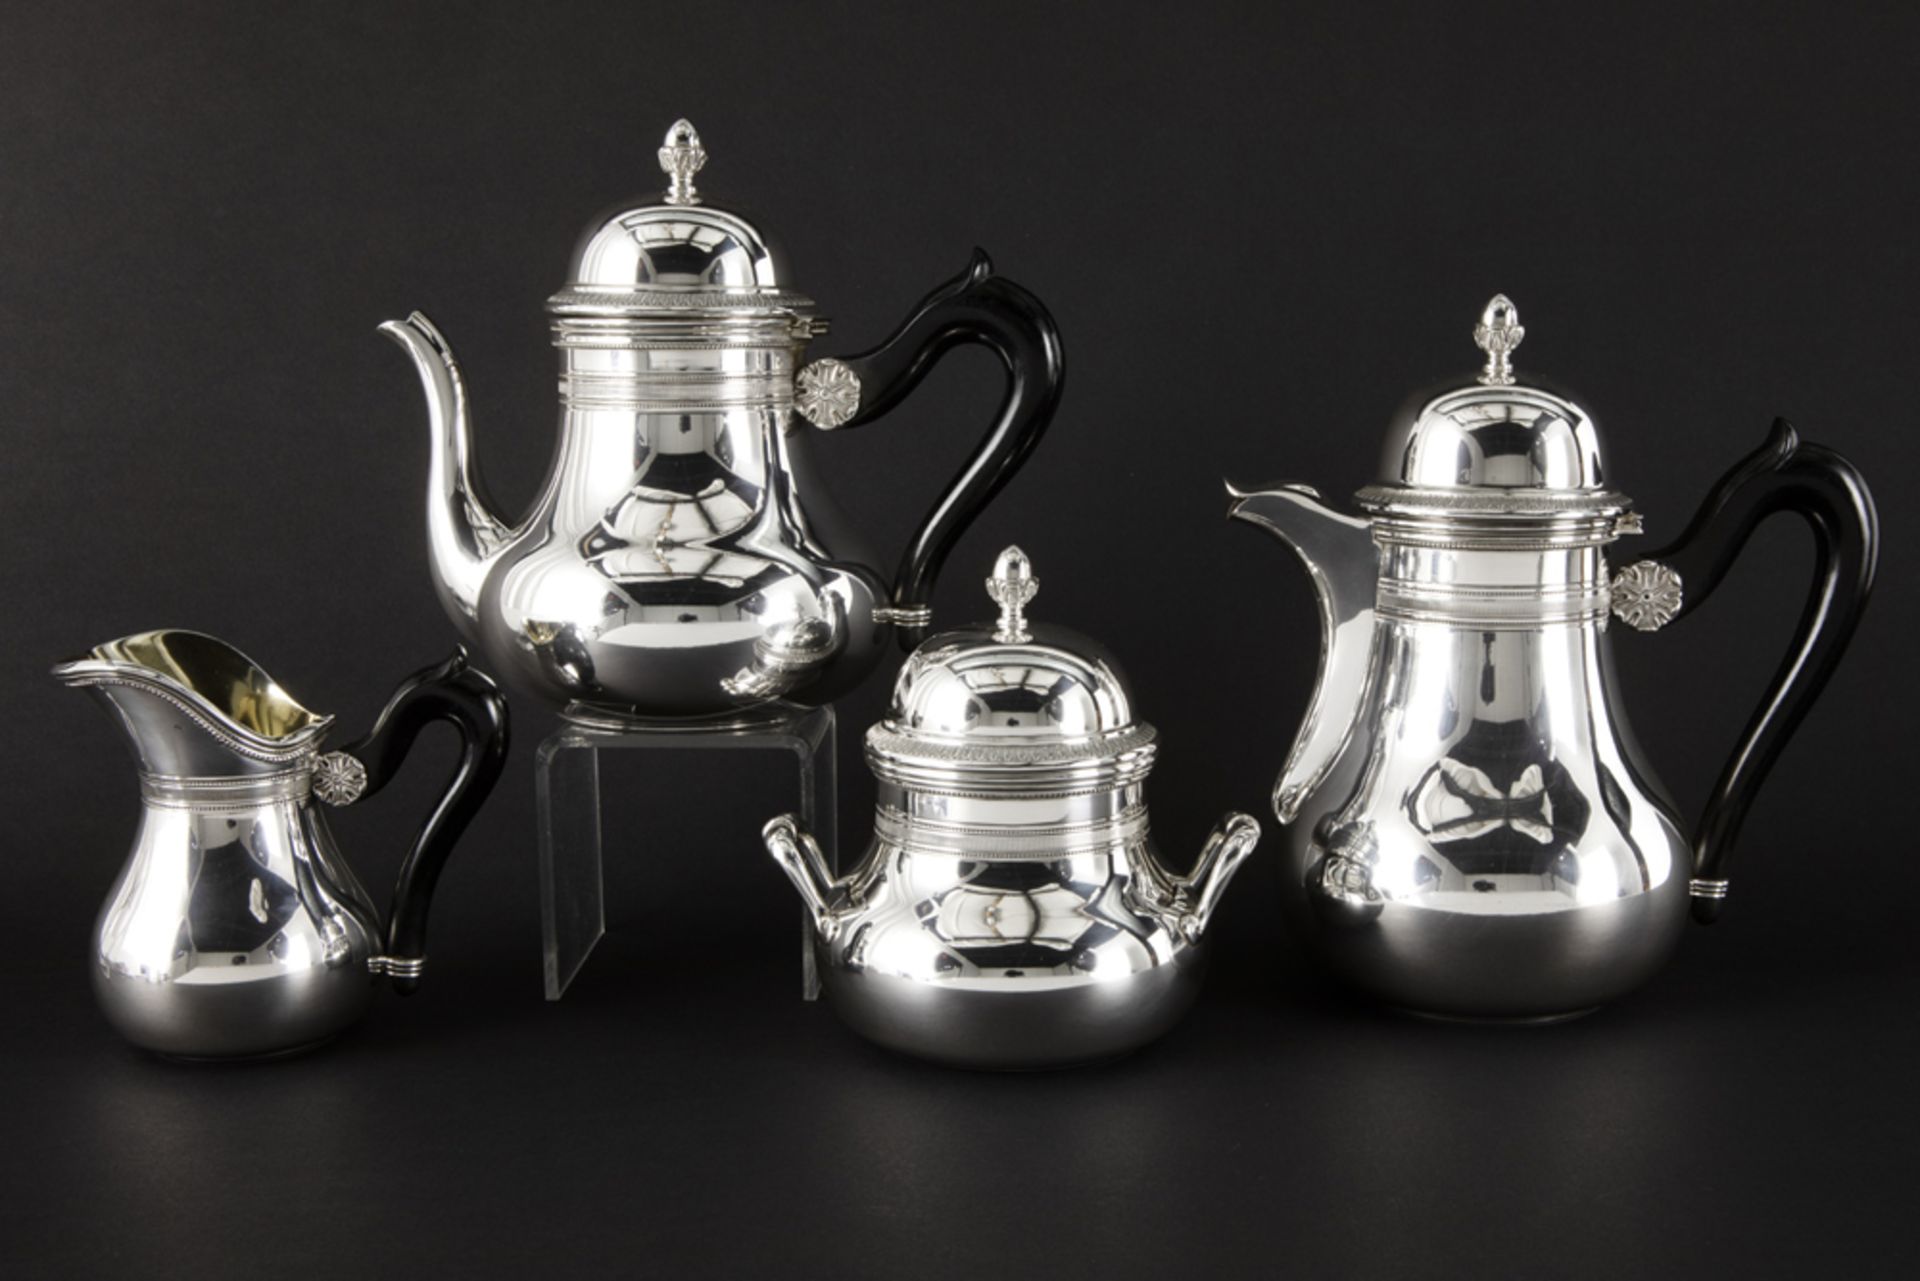 antique Belgian 4pc neoclassical coffee and tea-set in marked silver || Antiek Belgisch vierdelig